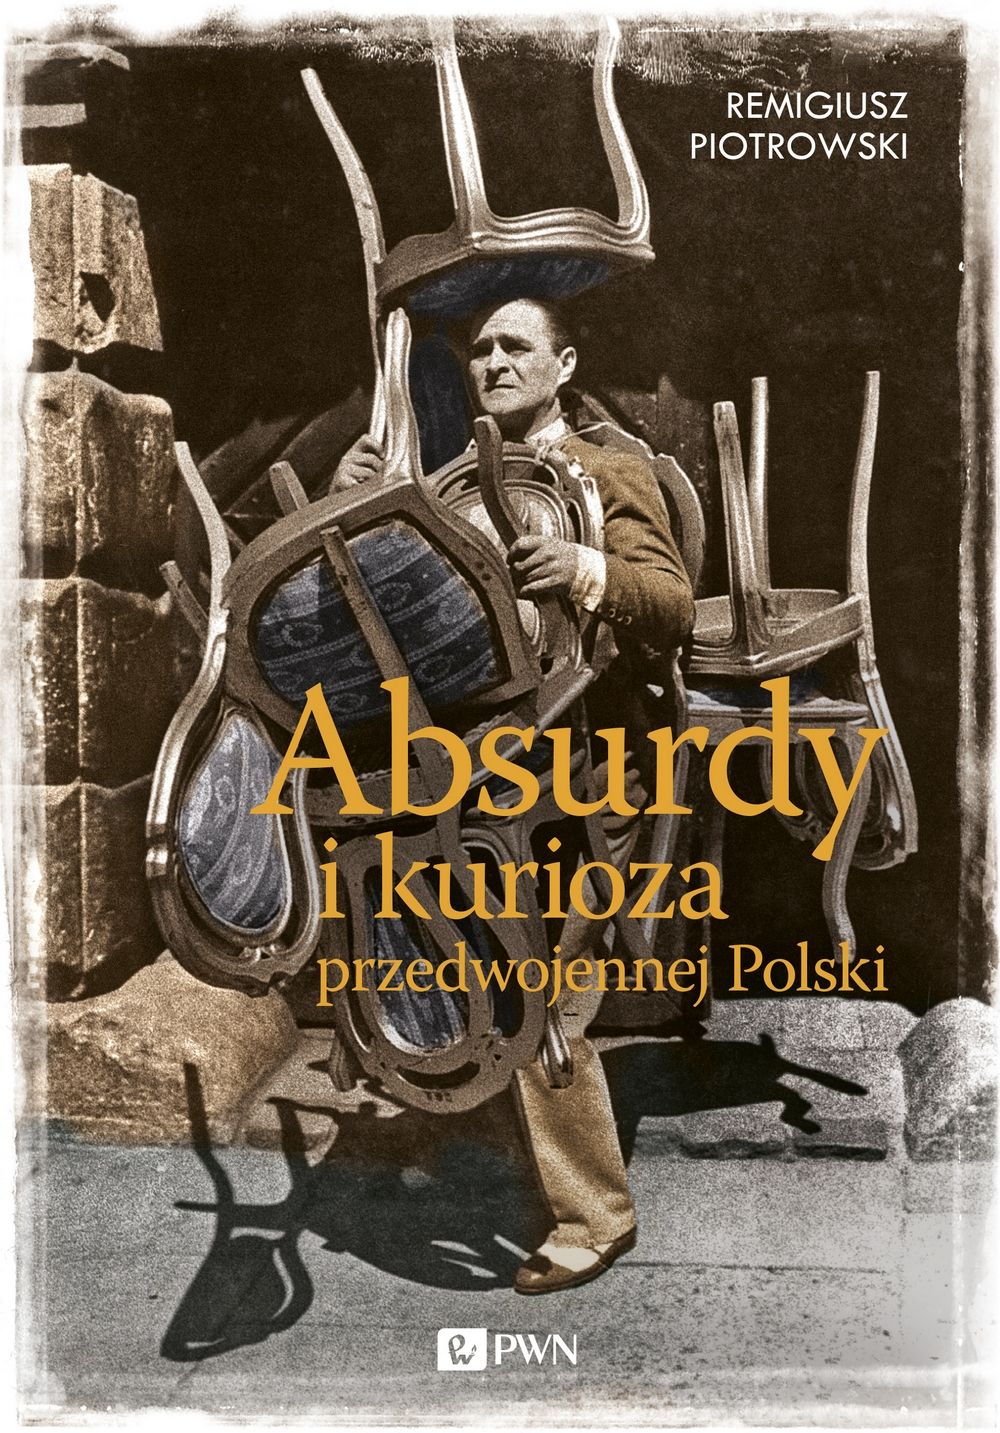 Kup książkę Remigiusza Piotrowskiego w specjalnej cenie na stronie Wydawcy.